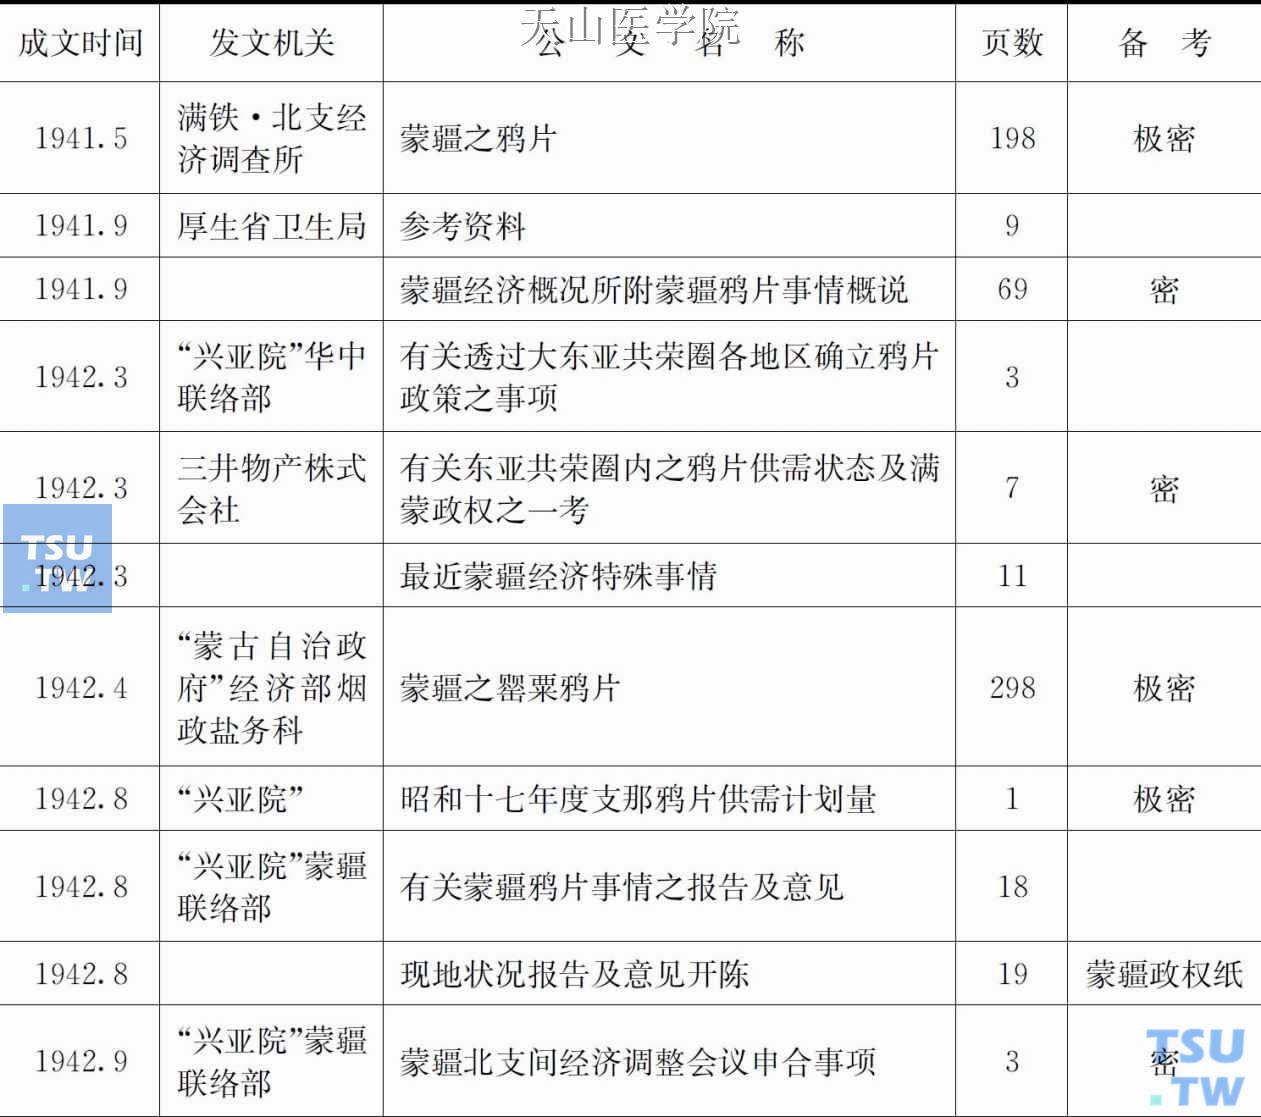 日本蒙疆鸦片政策31个公文一览表